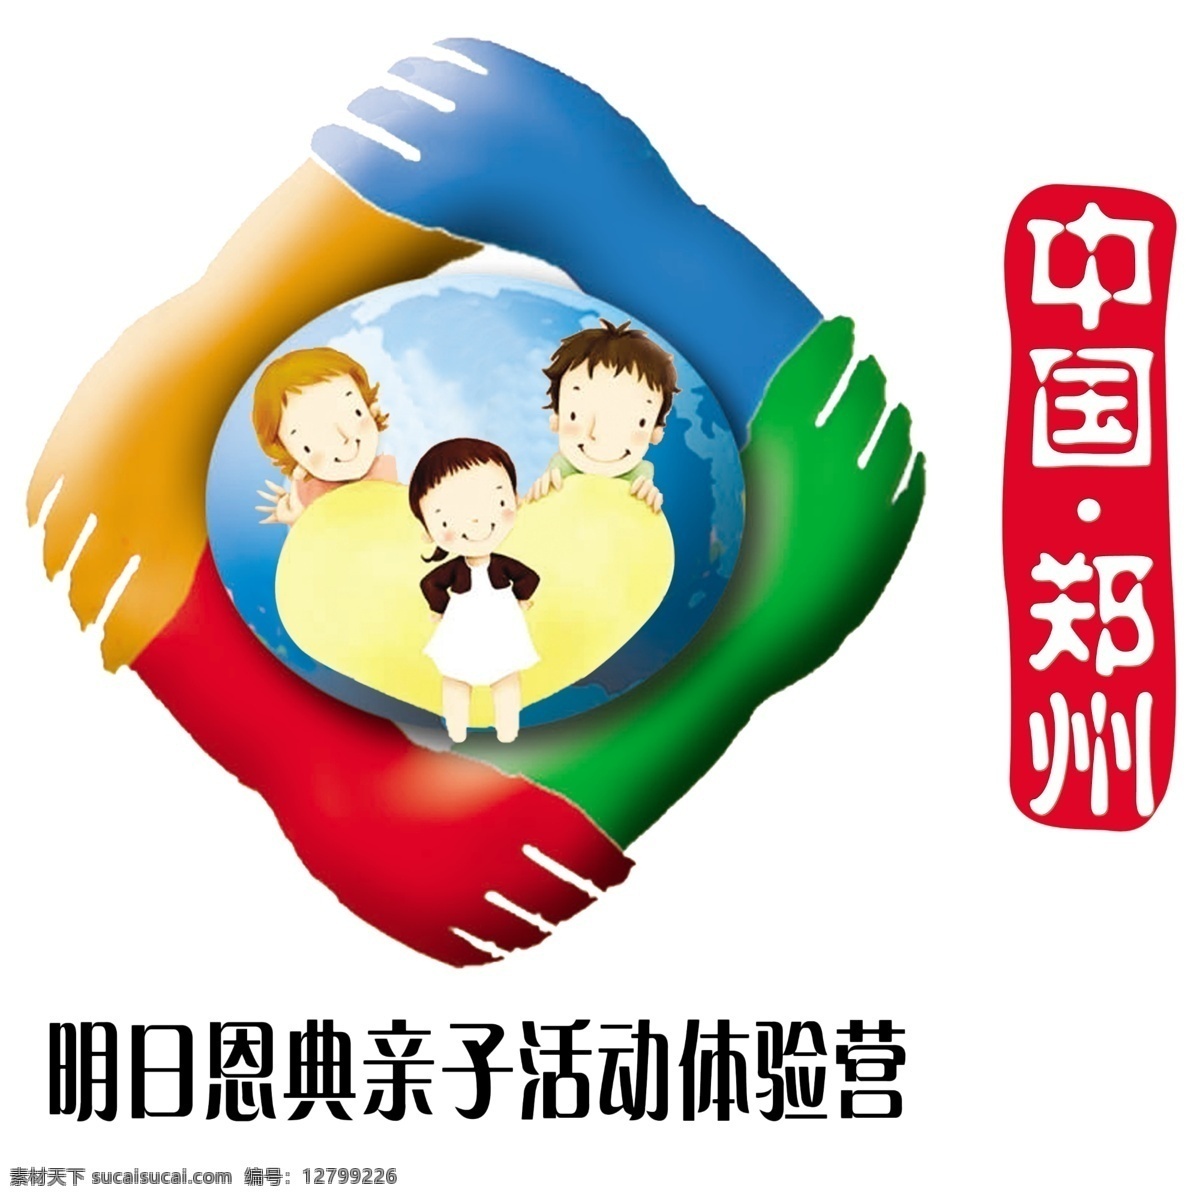 明日 恩典 标志 标志设计 幼儿园标志 明日恩典标志 亲子 活动 体验 营 四手联合 psd源文件 logo设计